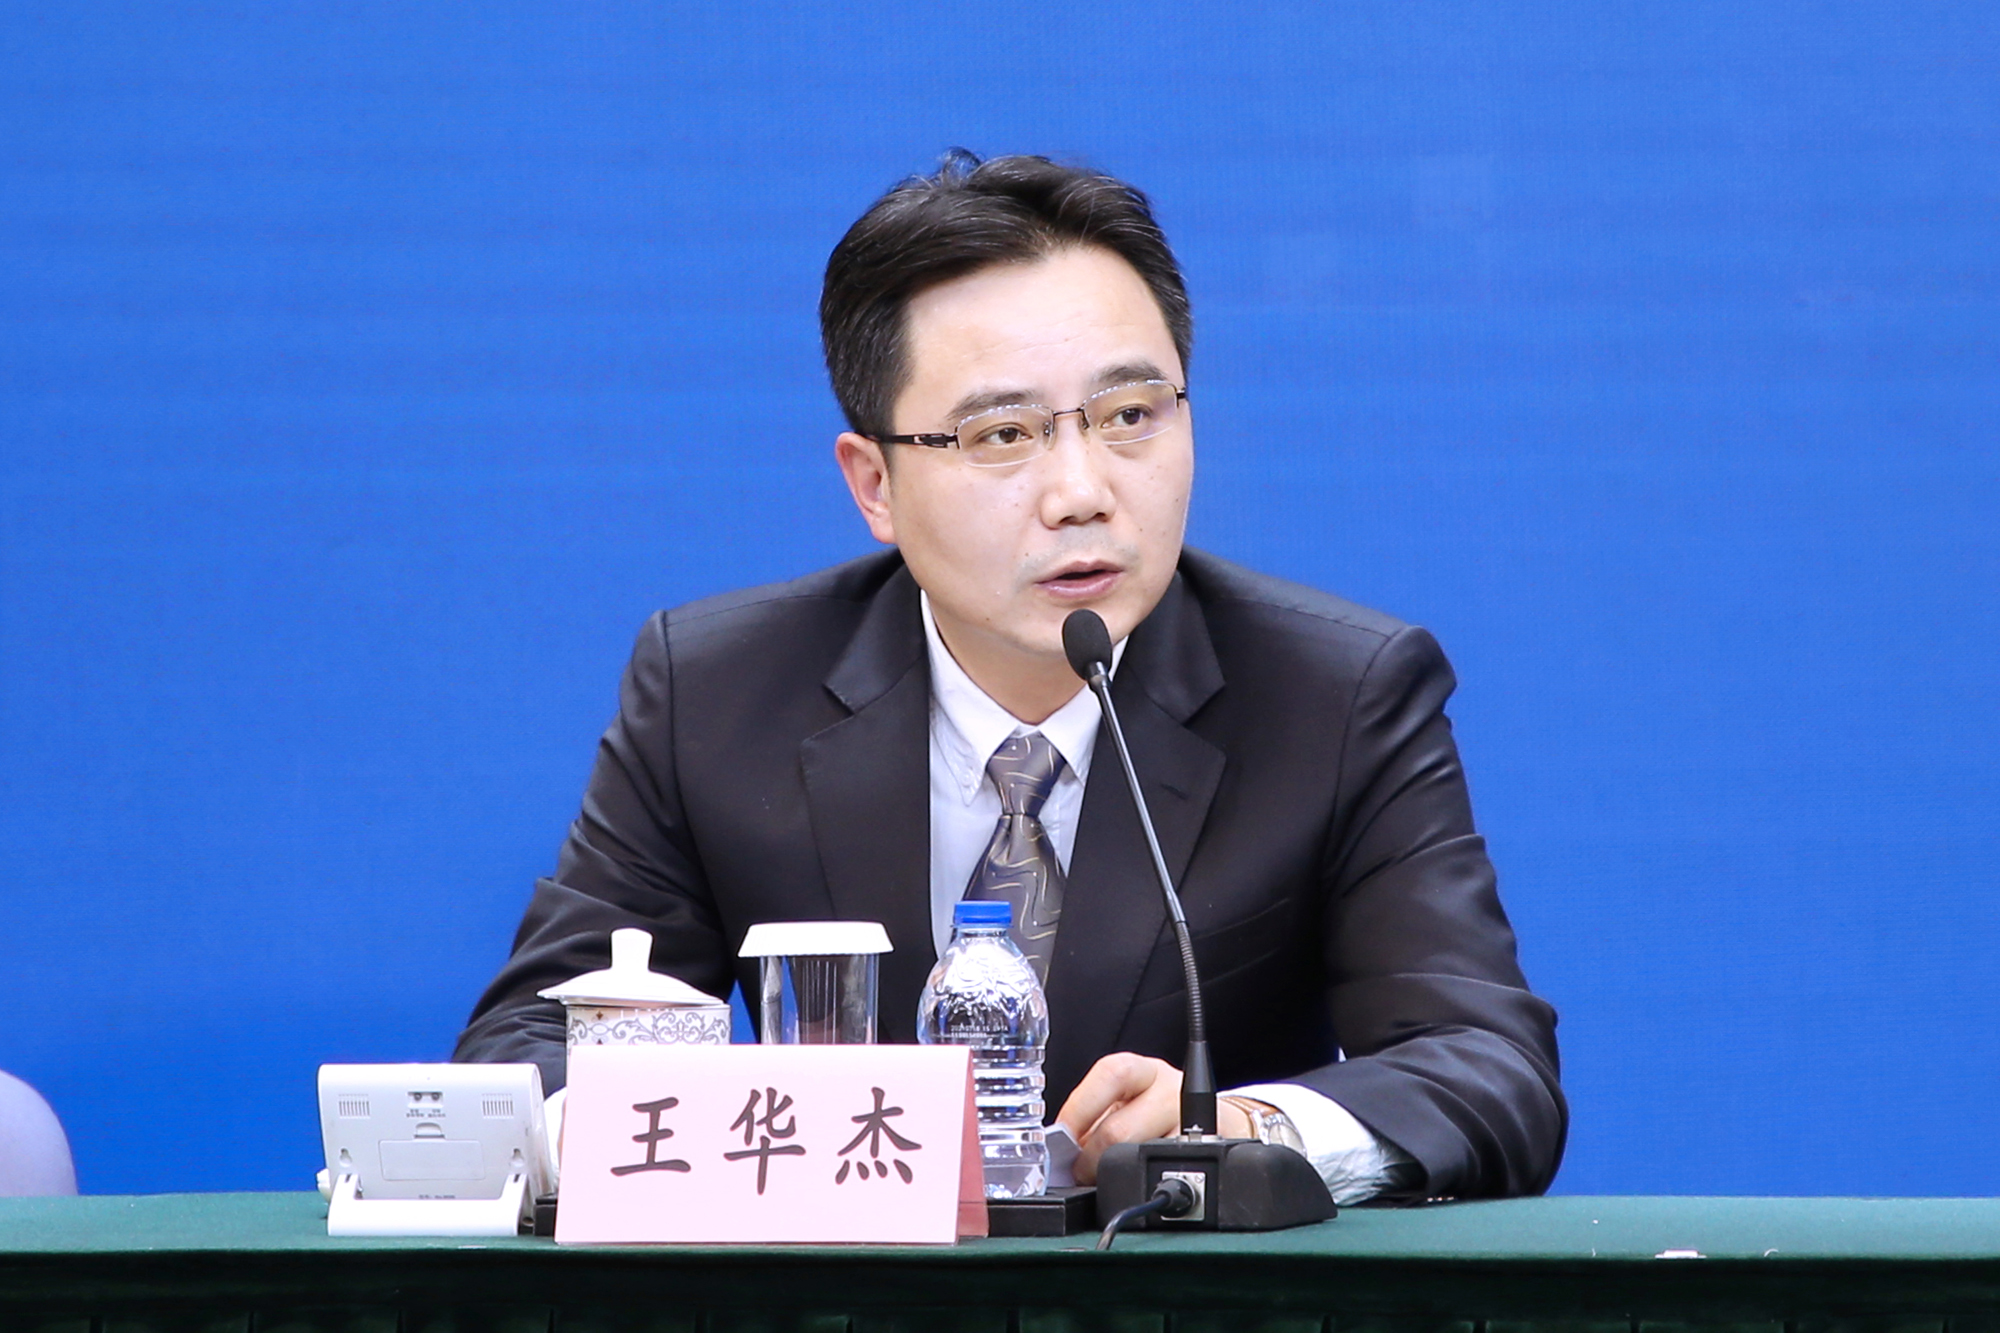 上海市发展改革委副主任王华杰出席发布会并讲话。